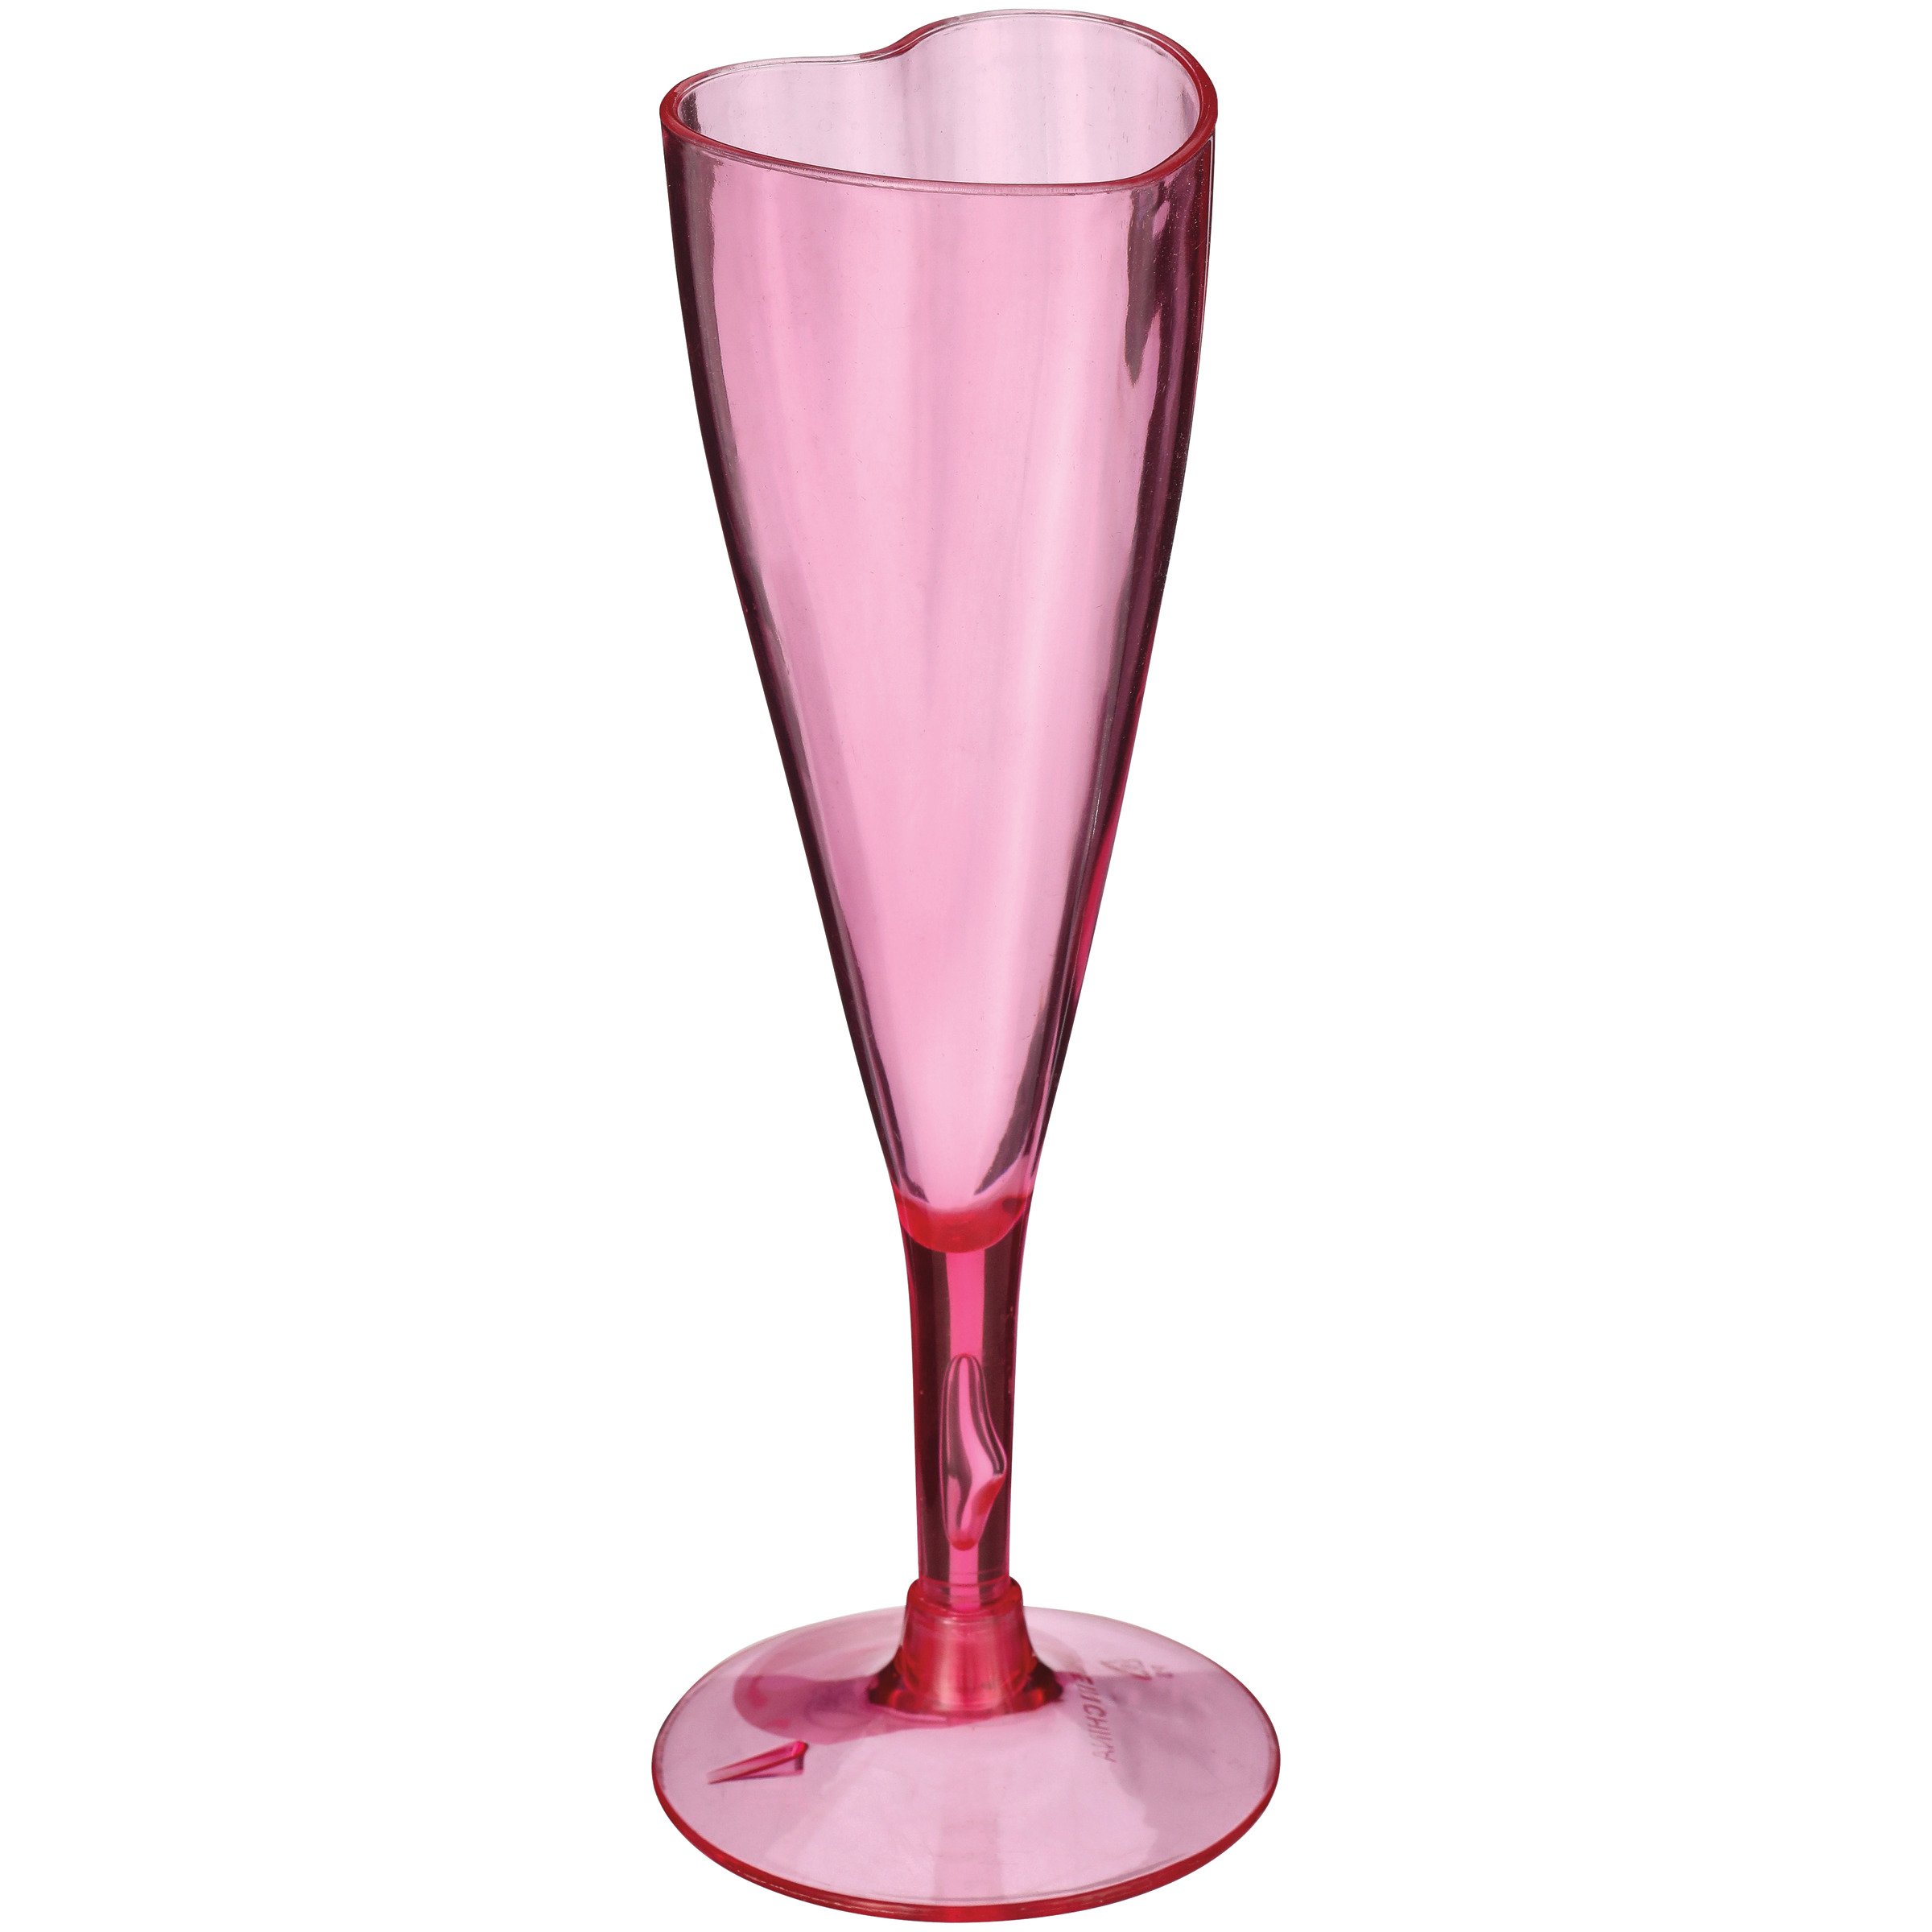 Buy Pink Set of 2 Heart Champagne Flutes Set of 2 Flute Glasses